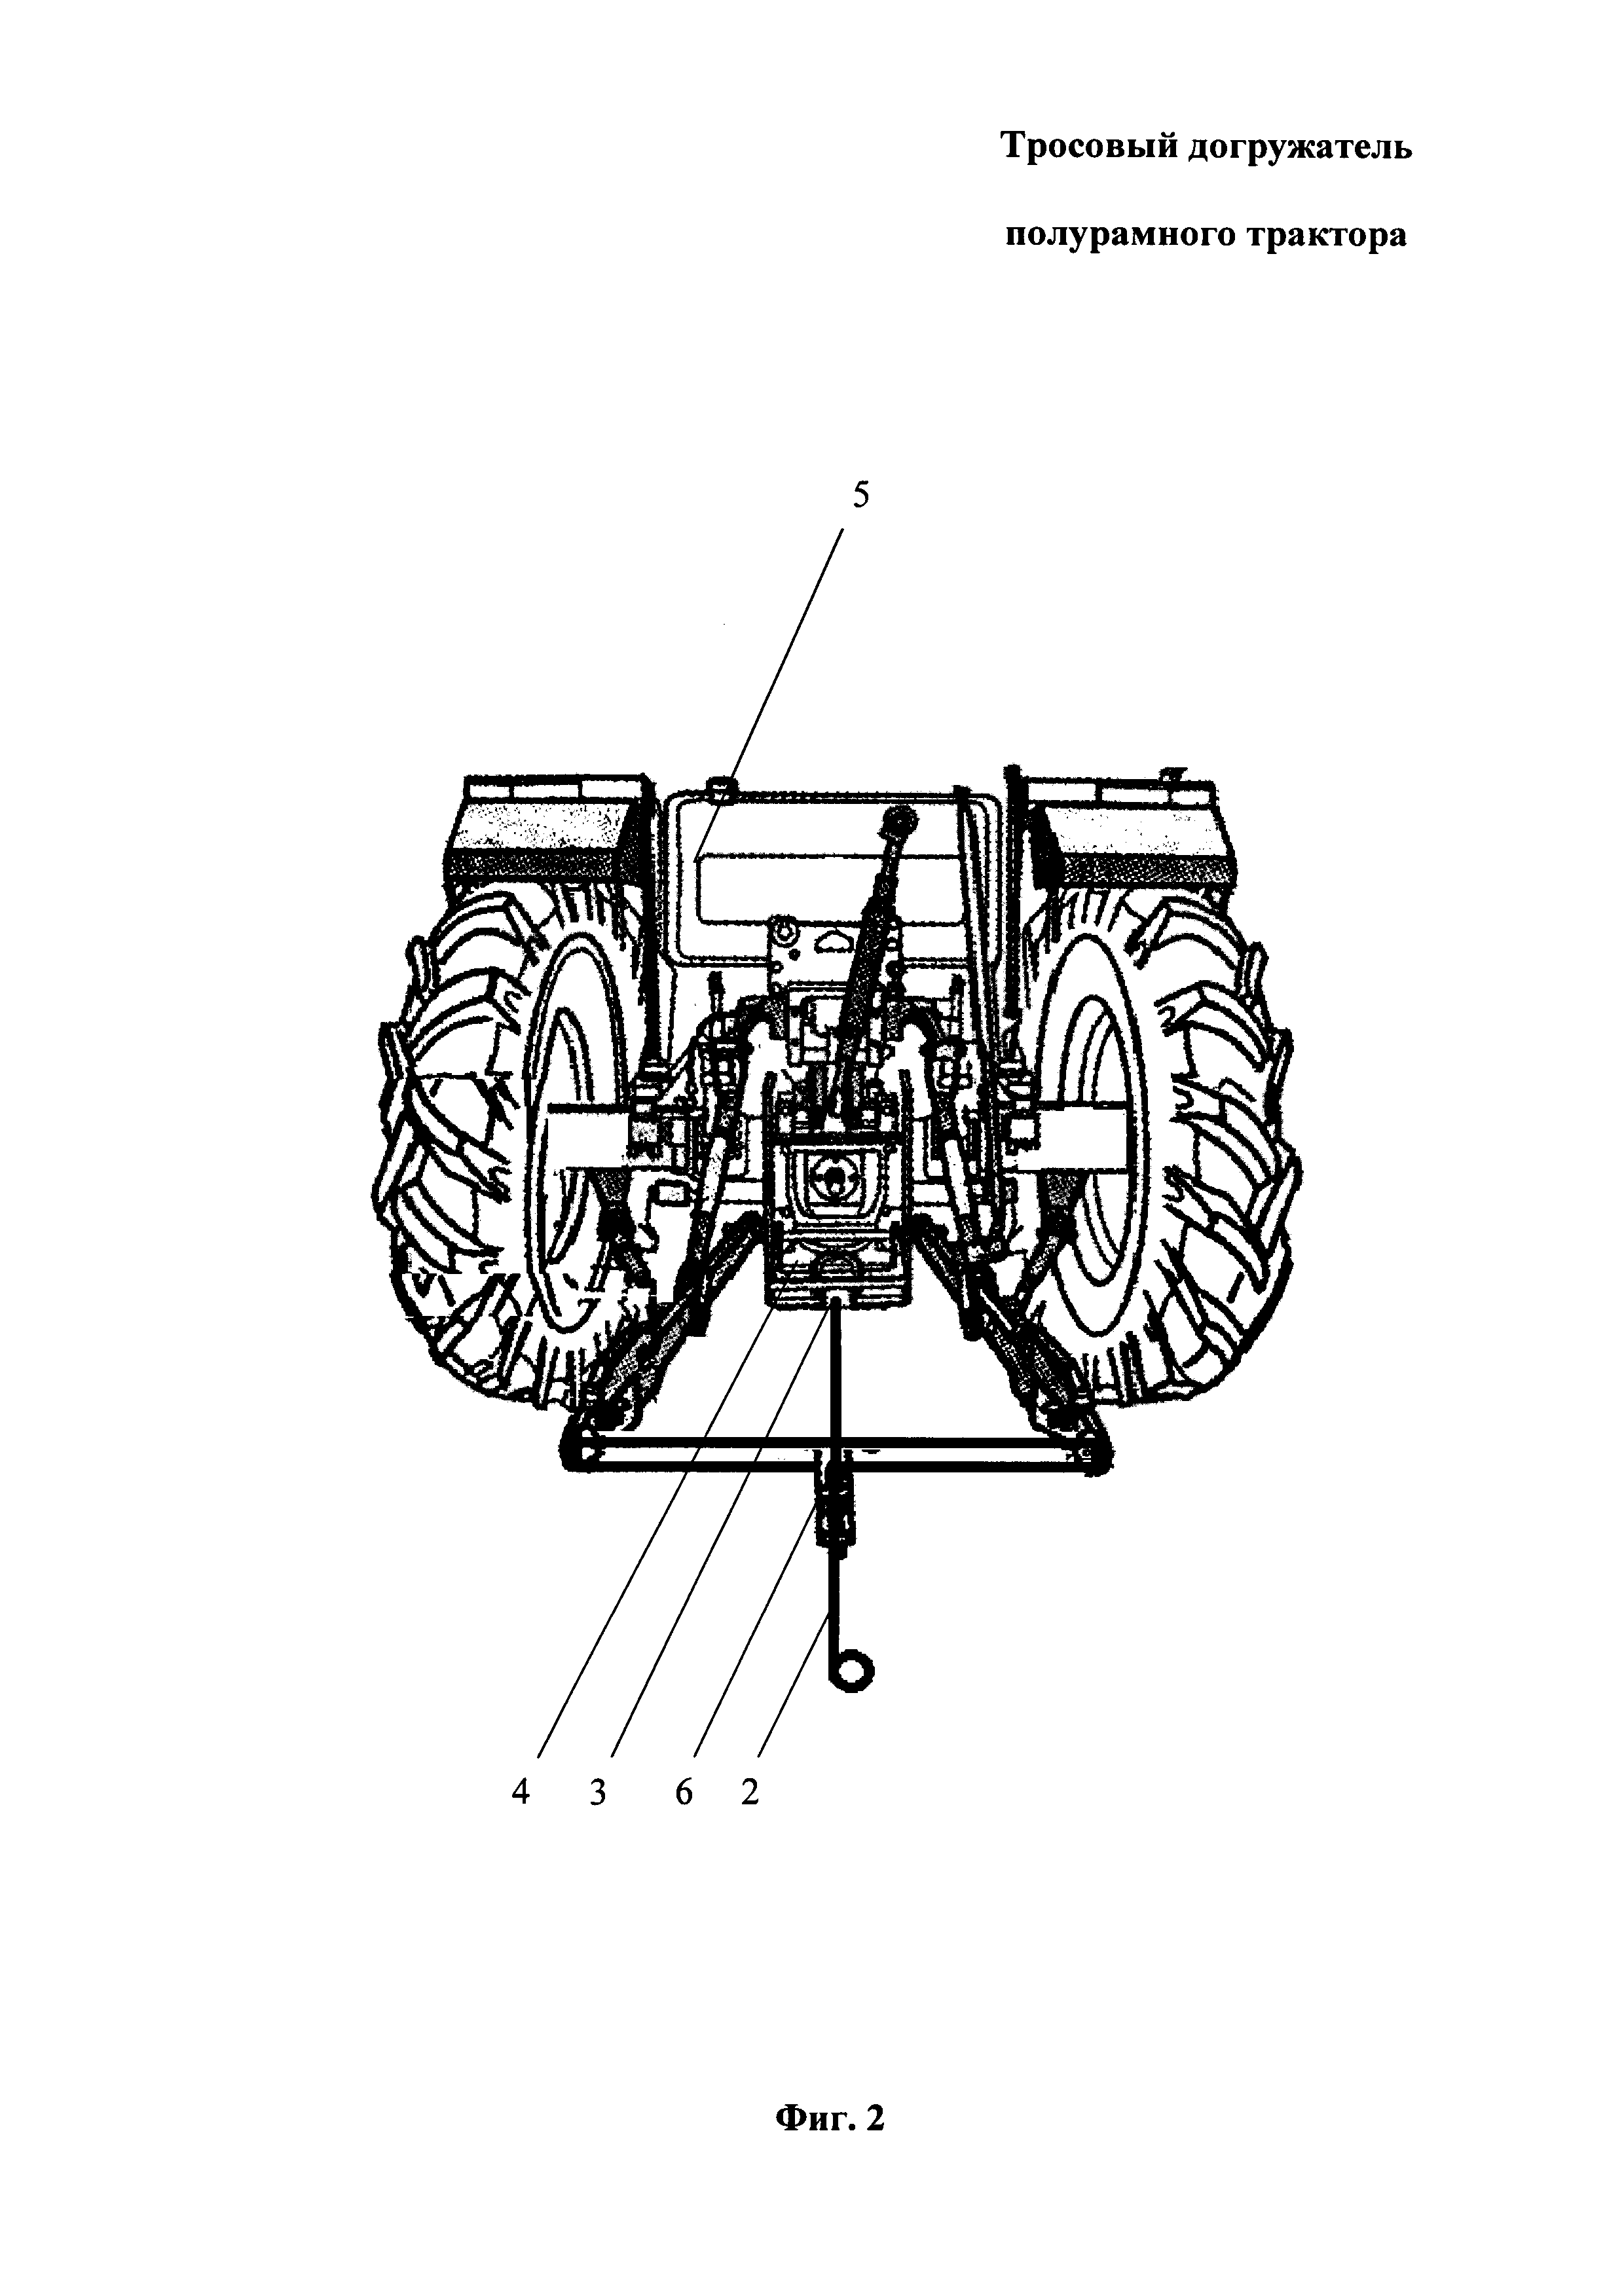 Тросовый догружатель полурамного трактора